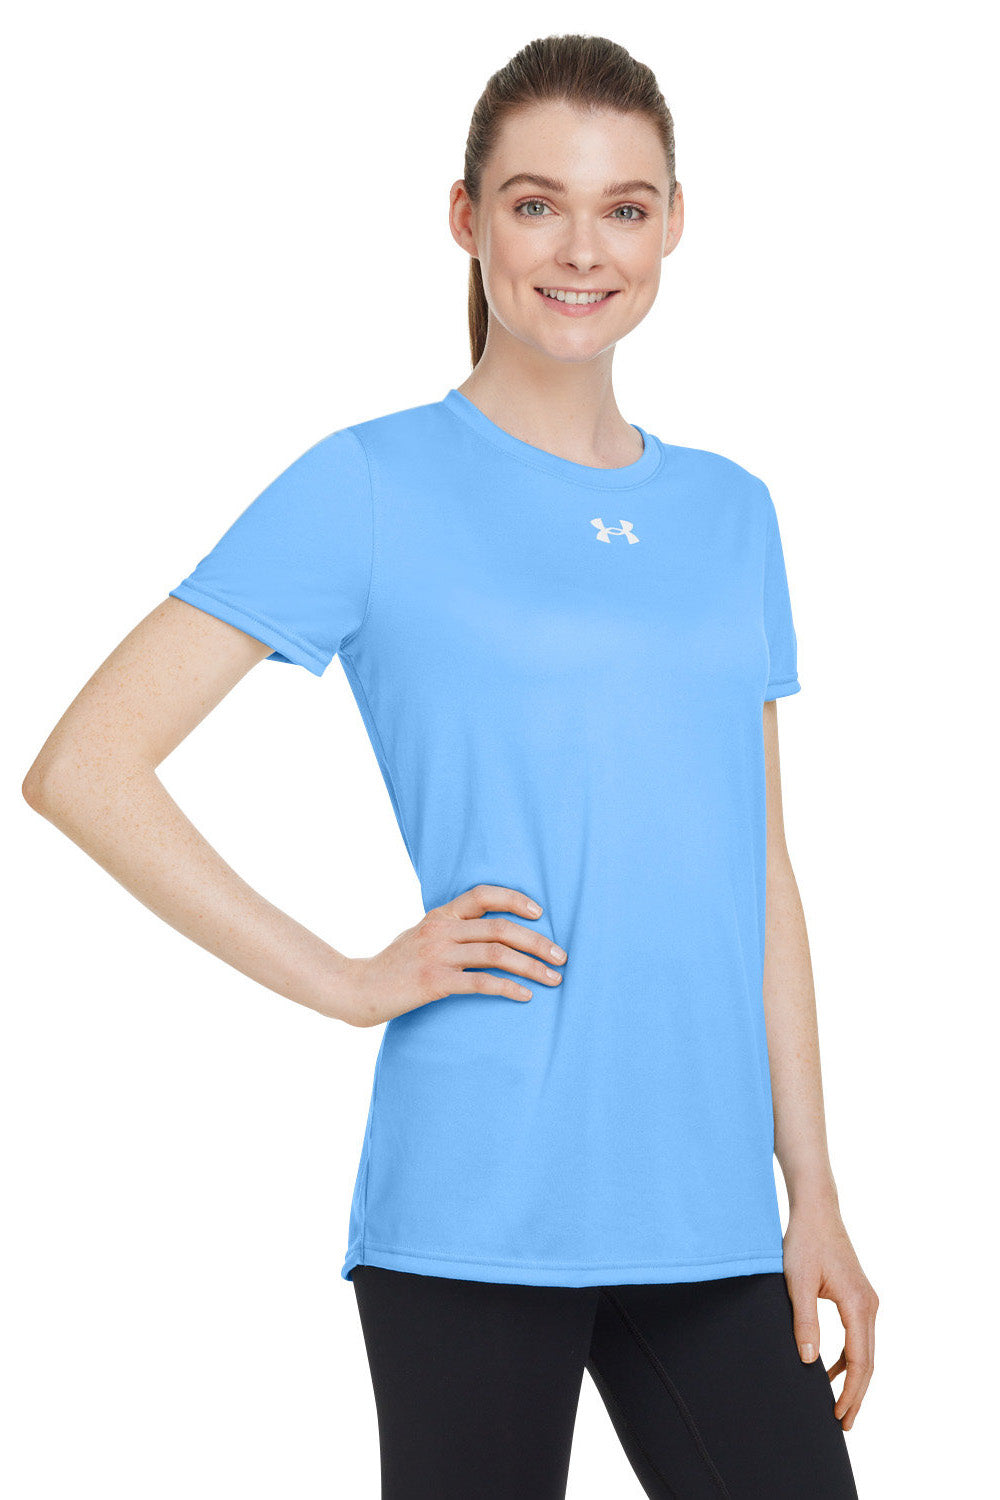 Under Armour 1376847 Womens Team Tech Moisture Wicking Short Sleeve Crewneck T-Shirt Carolina Blue Model 3Q